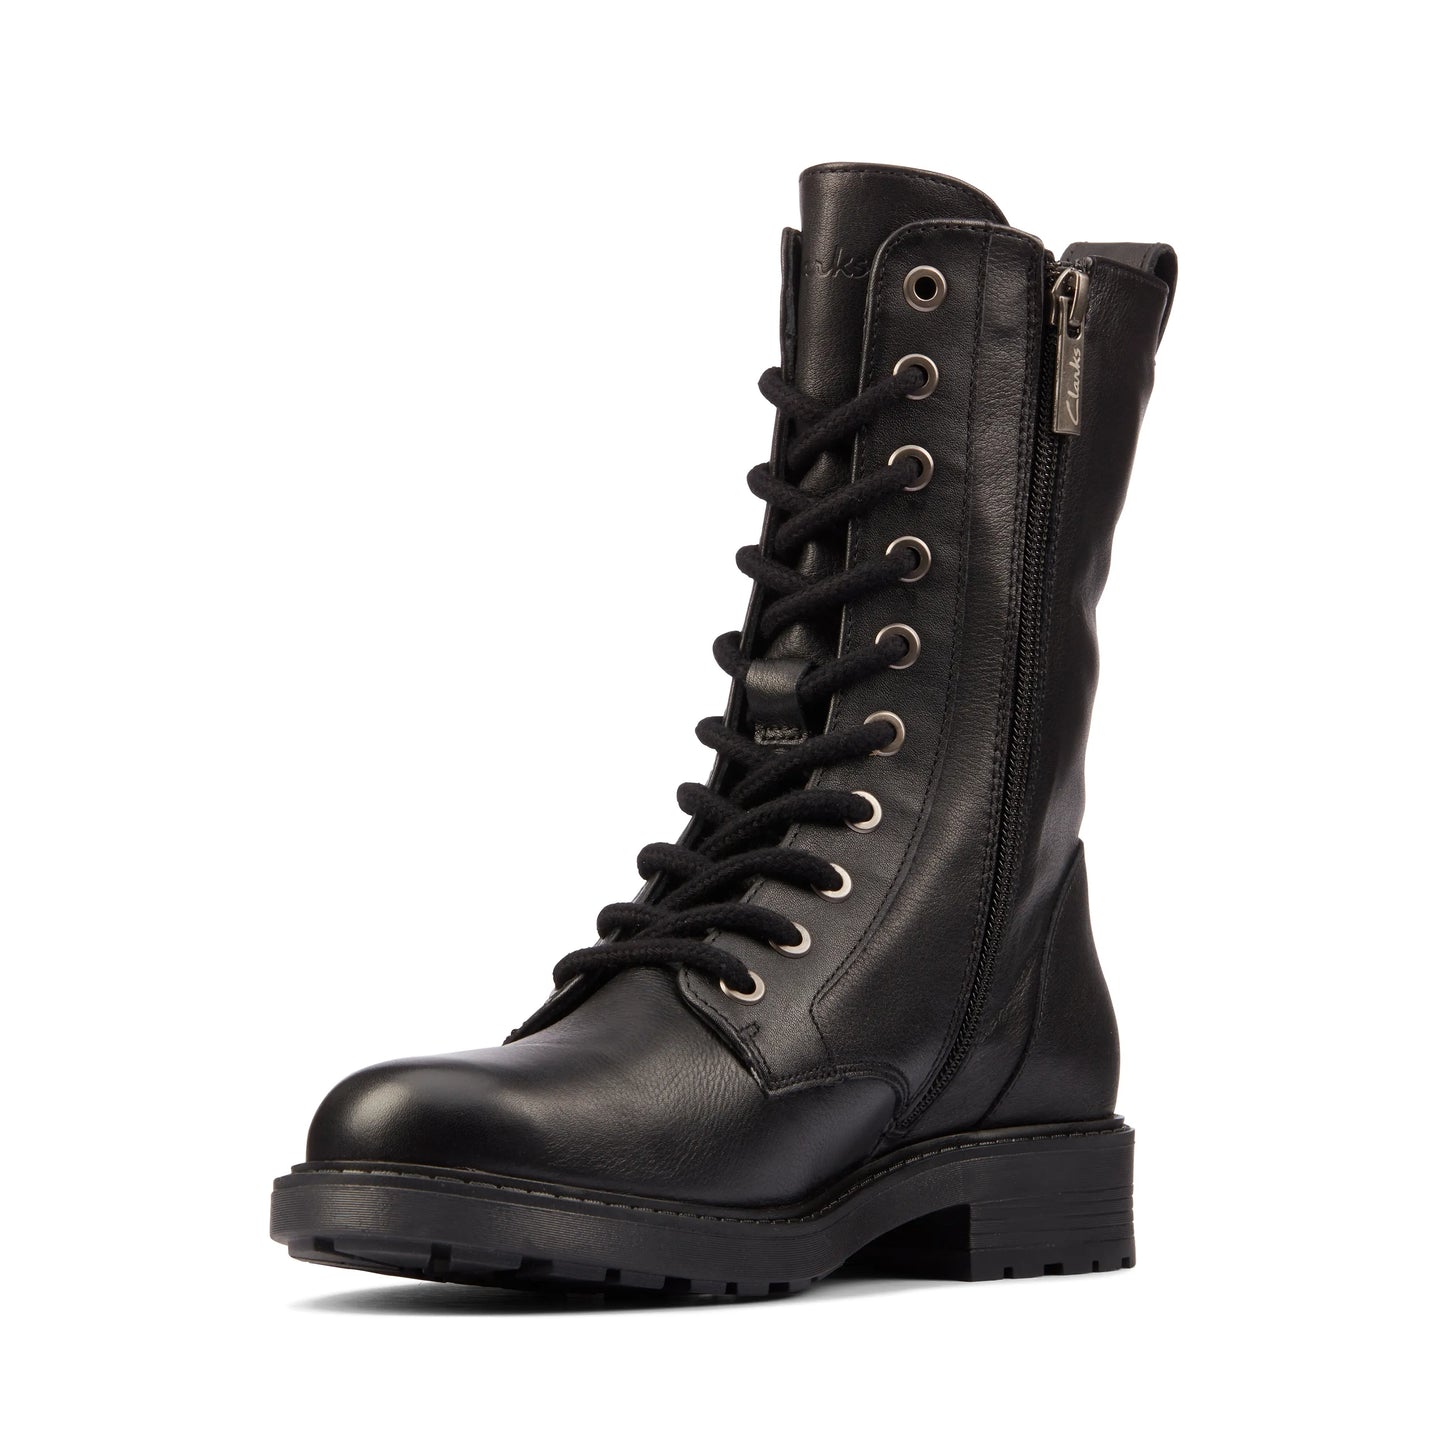 CLARKS | أحذية الكاحل النسائية | ORINOCO2 STYLE BLACK LEATHER | أسود